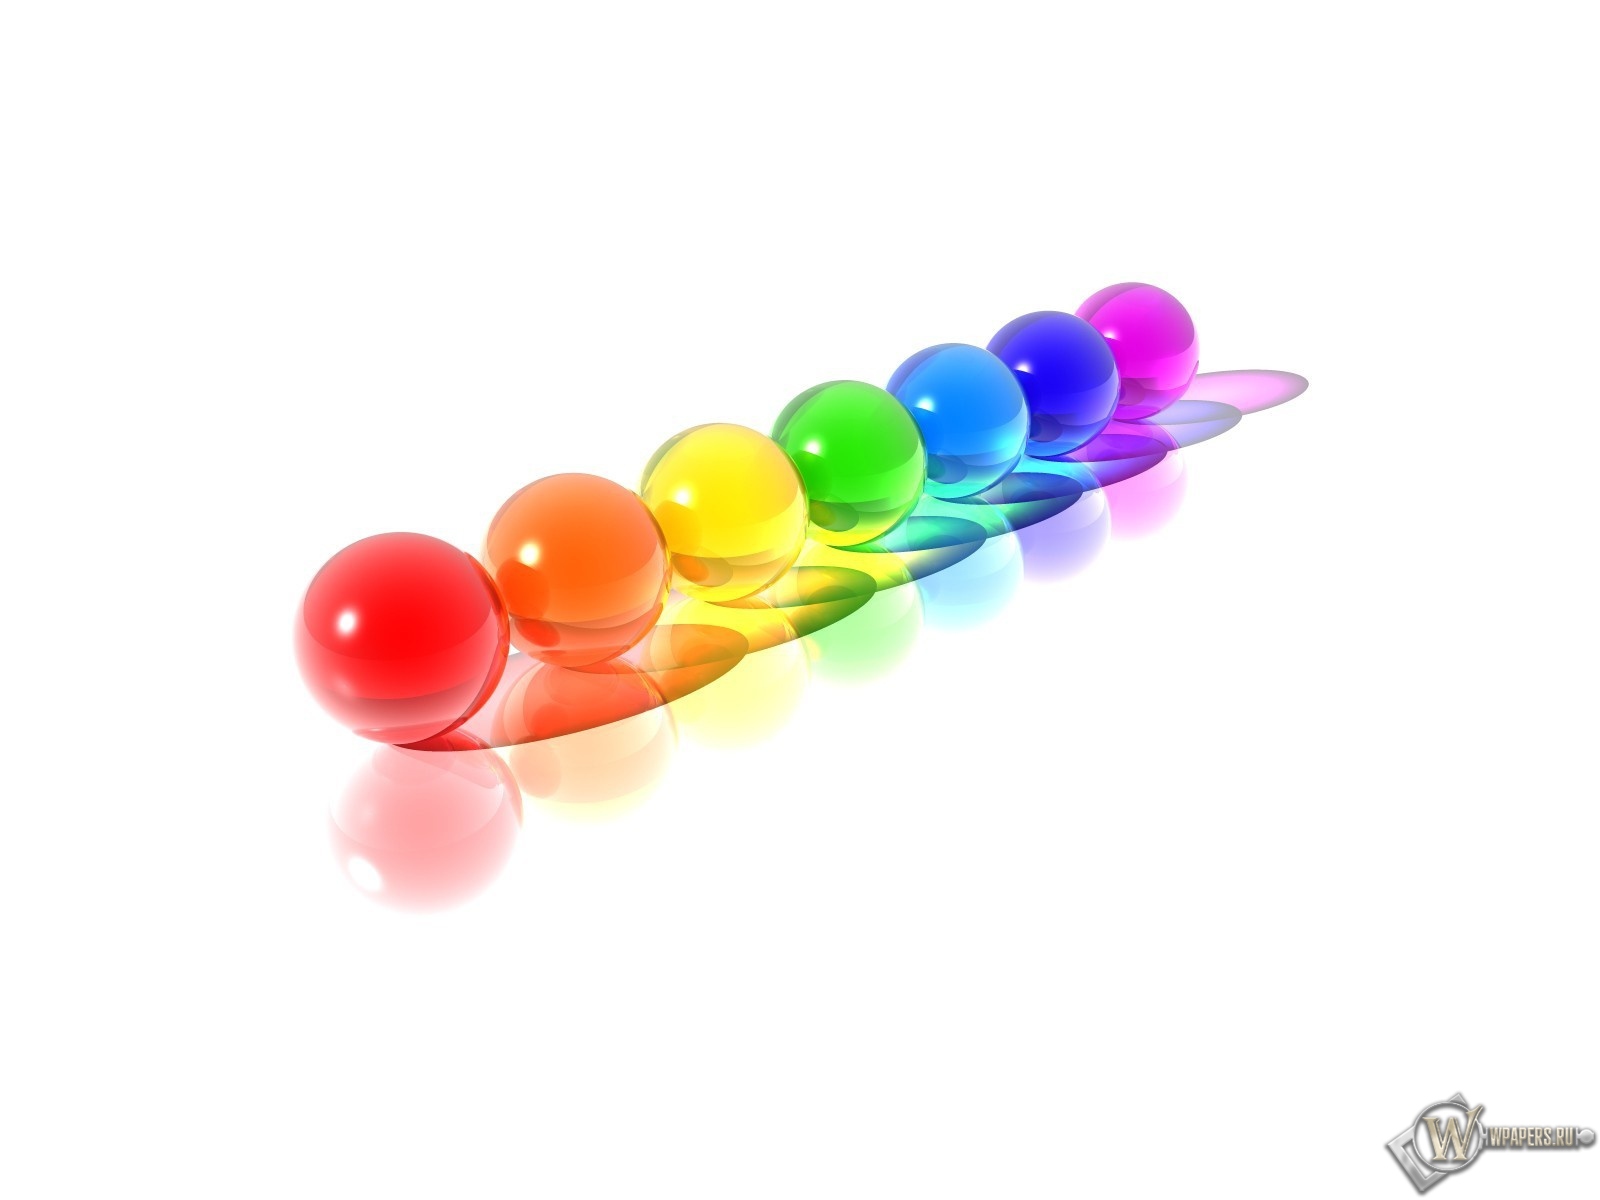 Разноцветные шарики 1600x1200